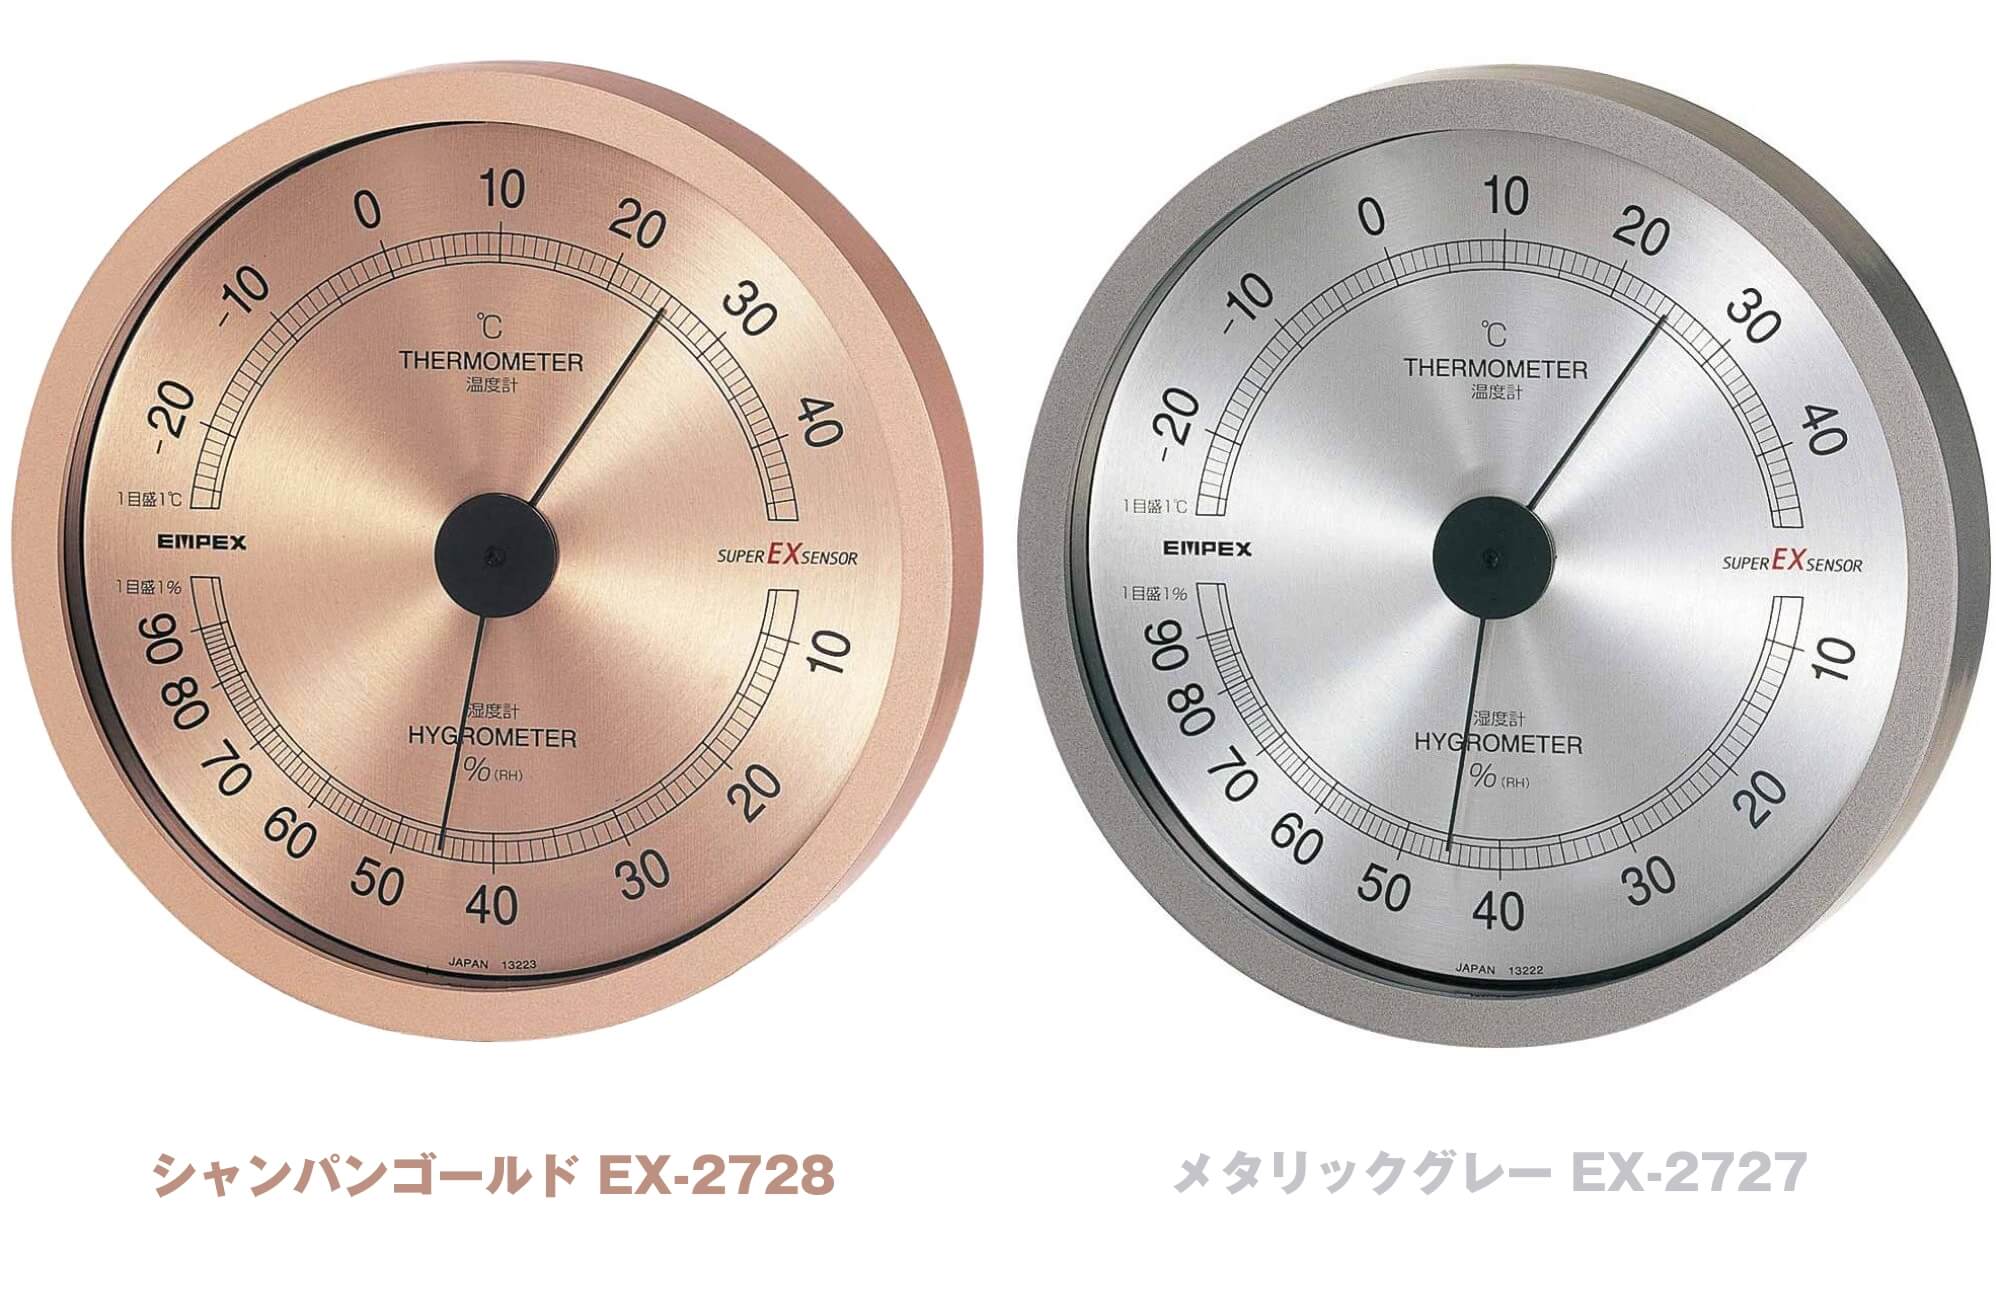 100％安い エンペックス気象計 温度計 くらしのメモリー温度計 壁掛け用 日本製 ホワイト TG-6631